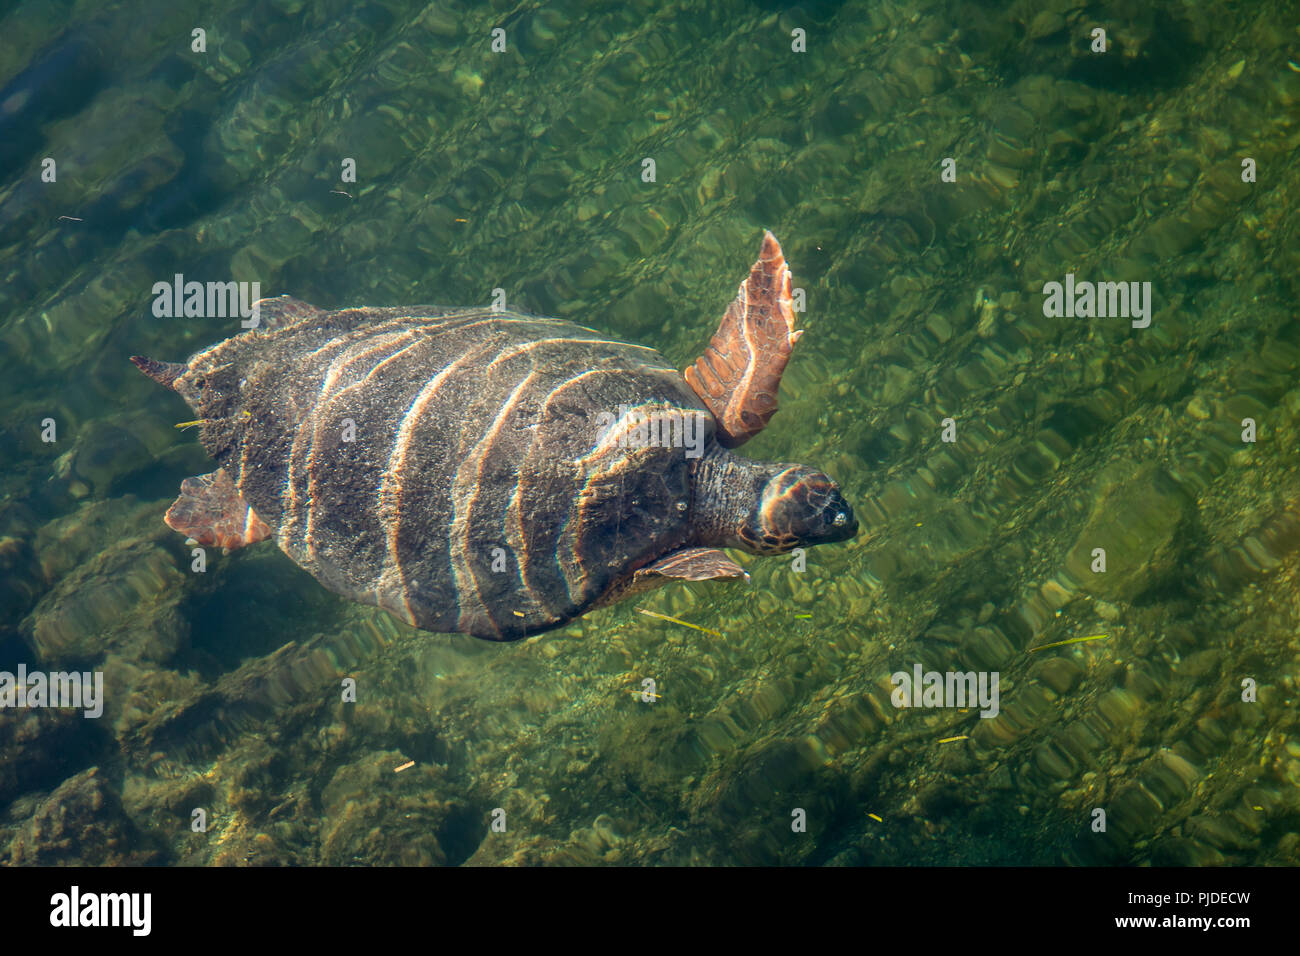 Tartaruga marina Caretta caretta nella baia di Argostoli sull'isola greca di Cefalonia Foto Stock